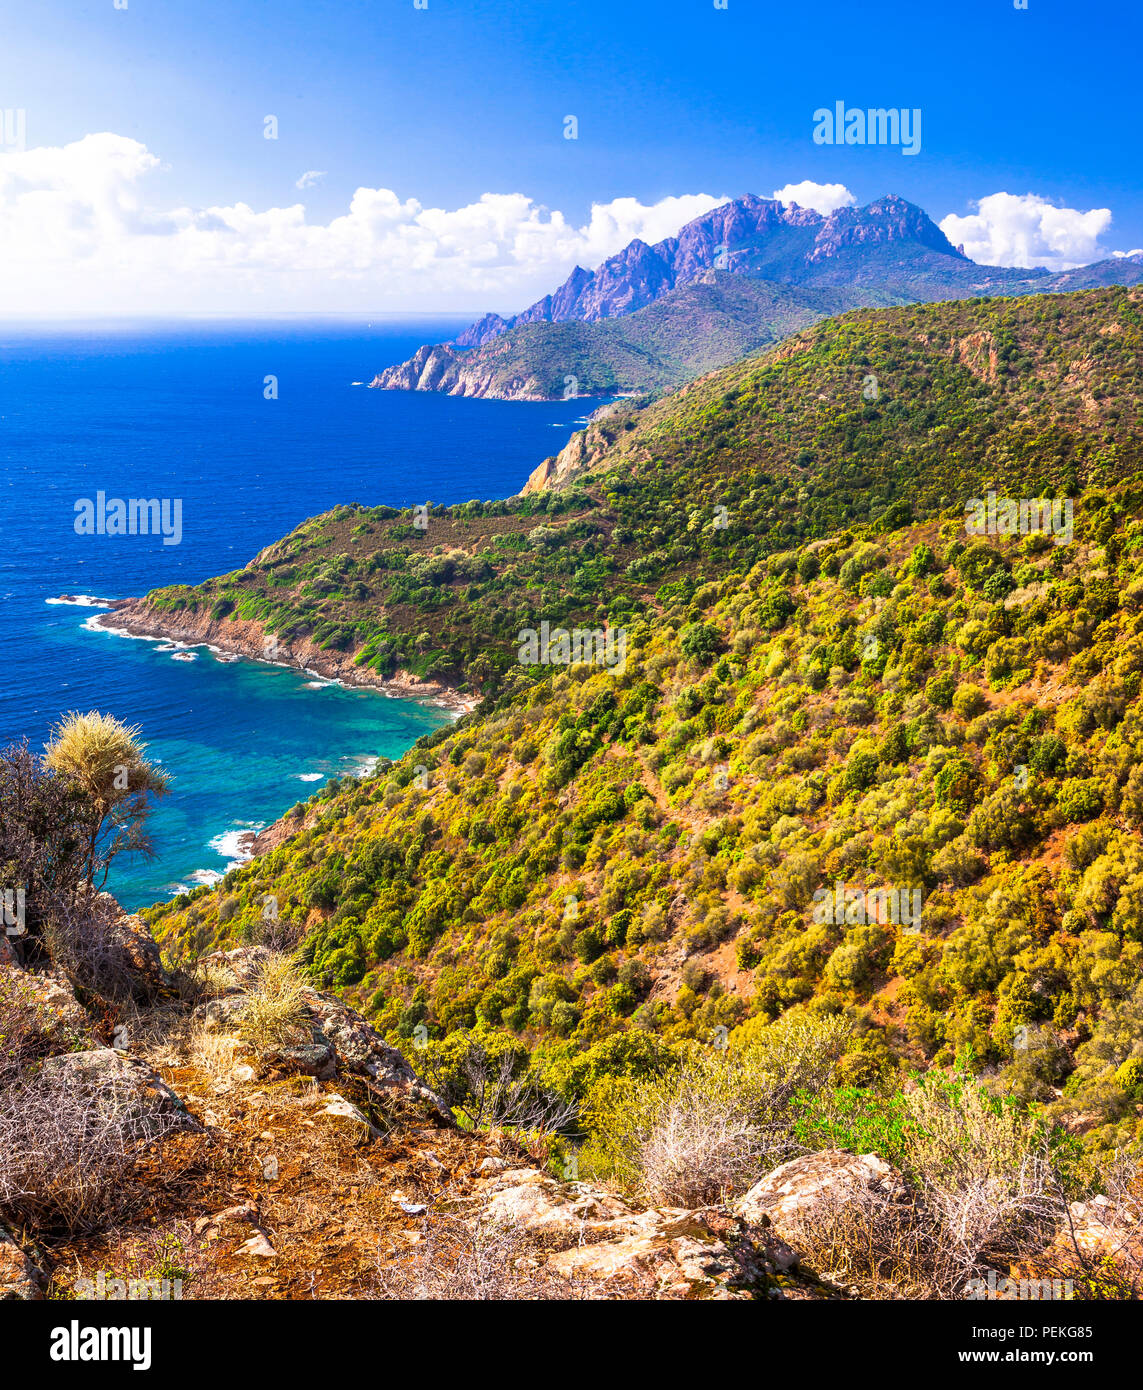 Impressionante paesaggio panoramico,vista con le montagne e il mare,Calanques,Corsica,Francia. Foto Stock